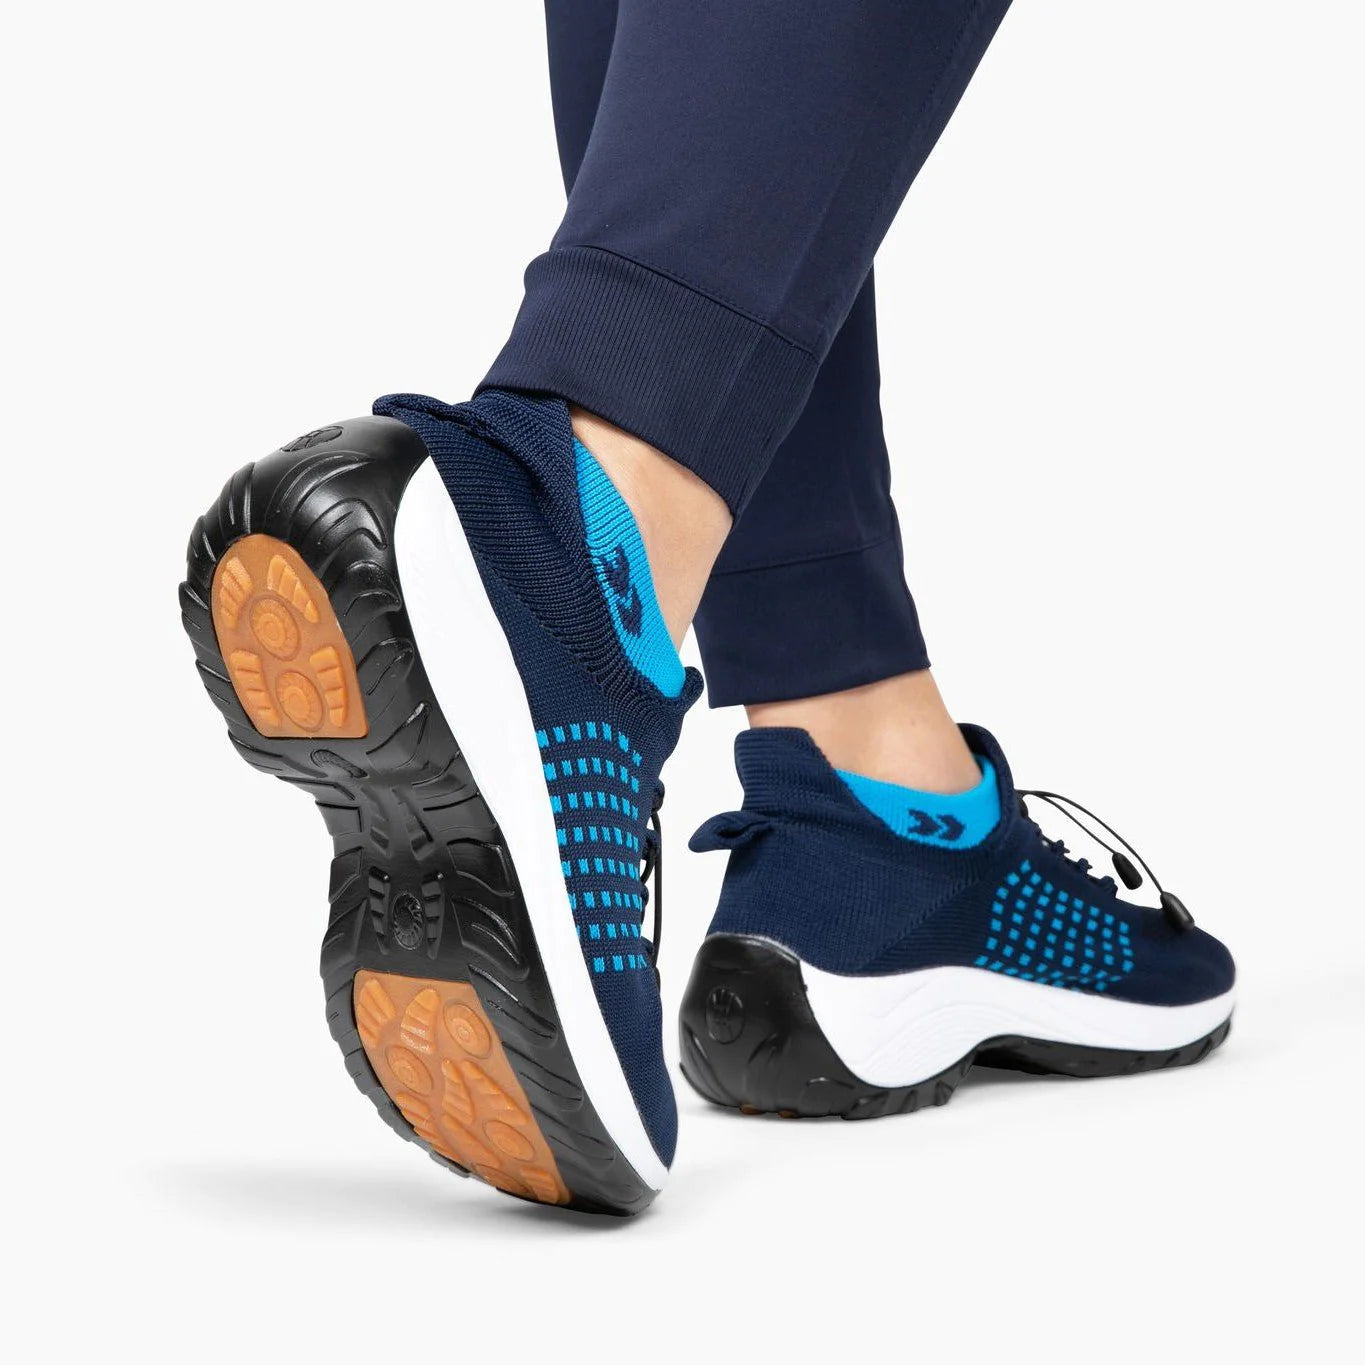 Chaussures Orthopédiques Confortable Et Anti-Douleurs Pour Femme | ActiveWear